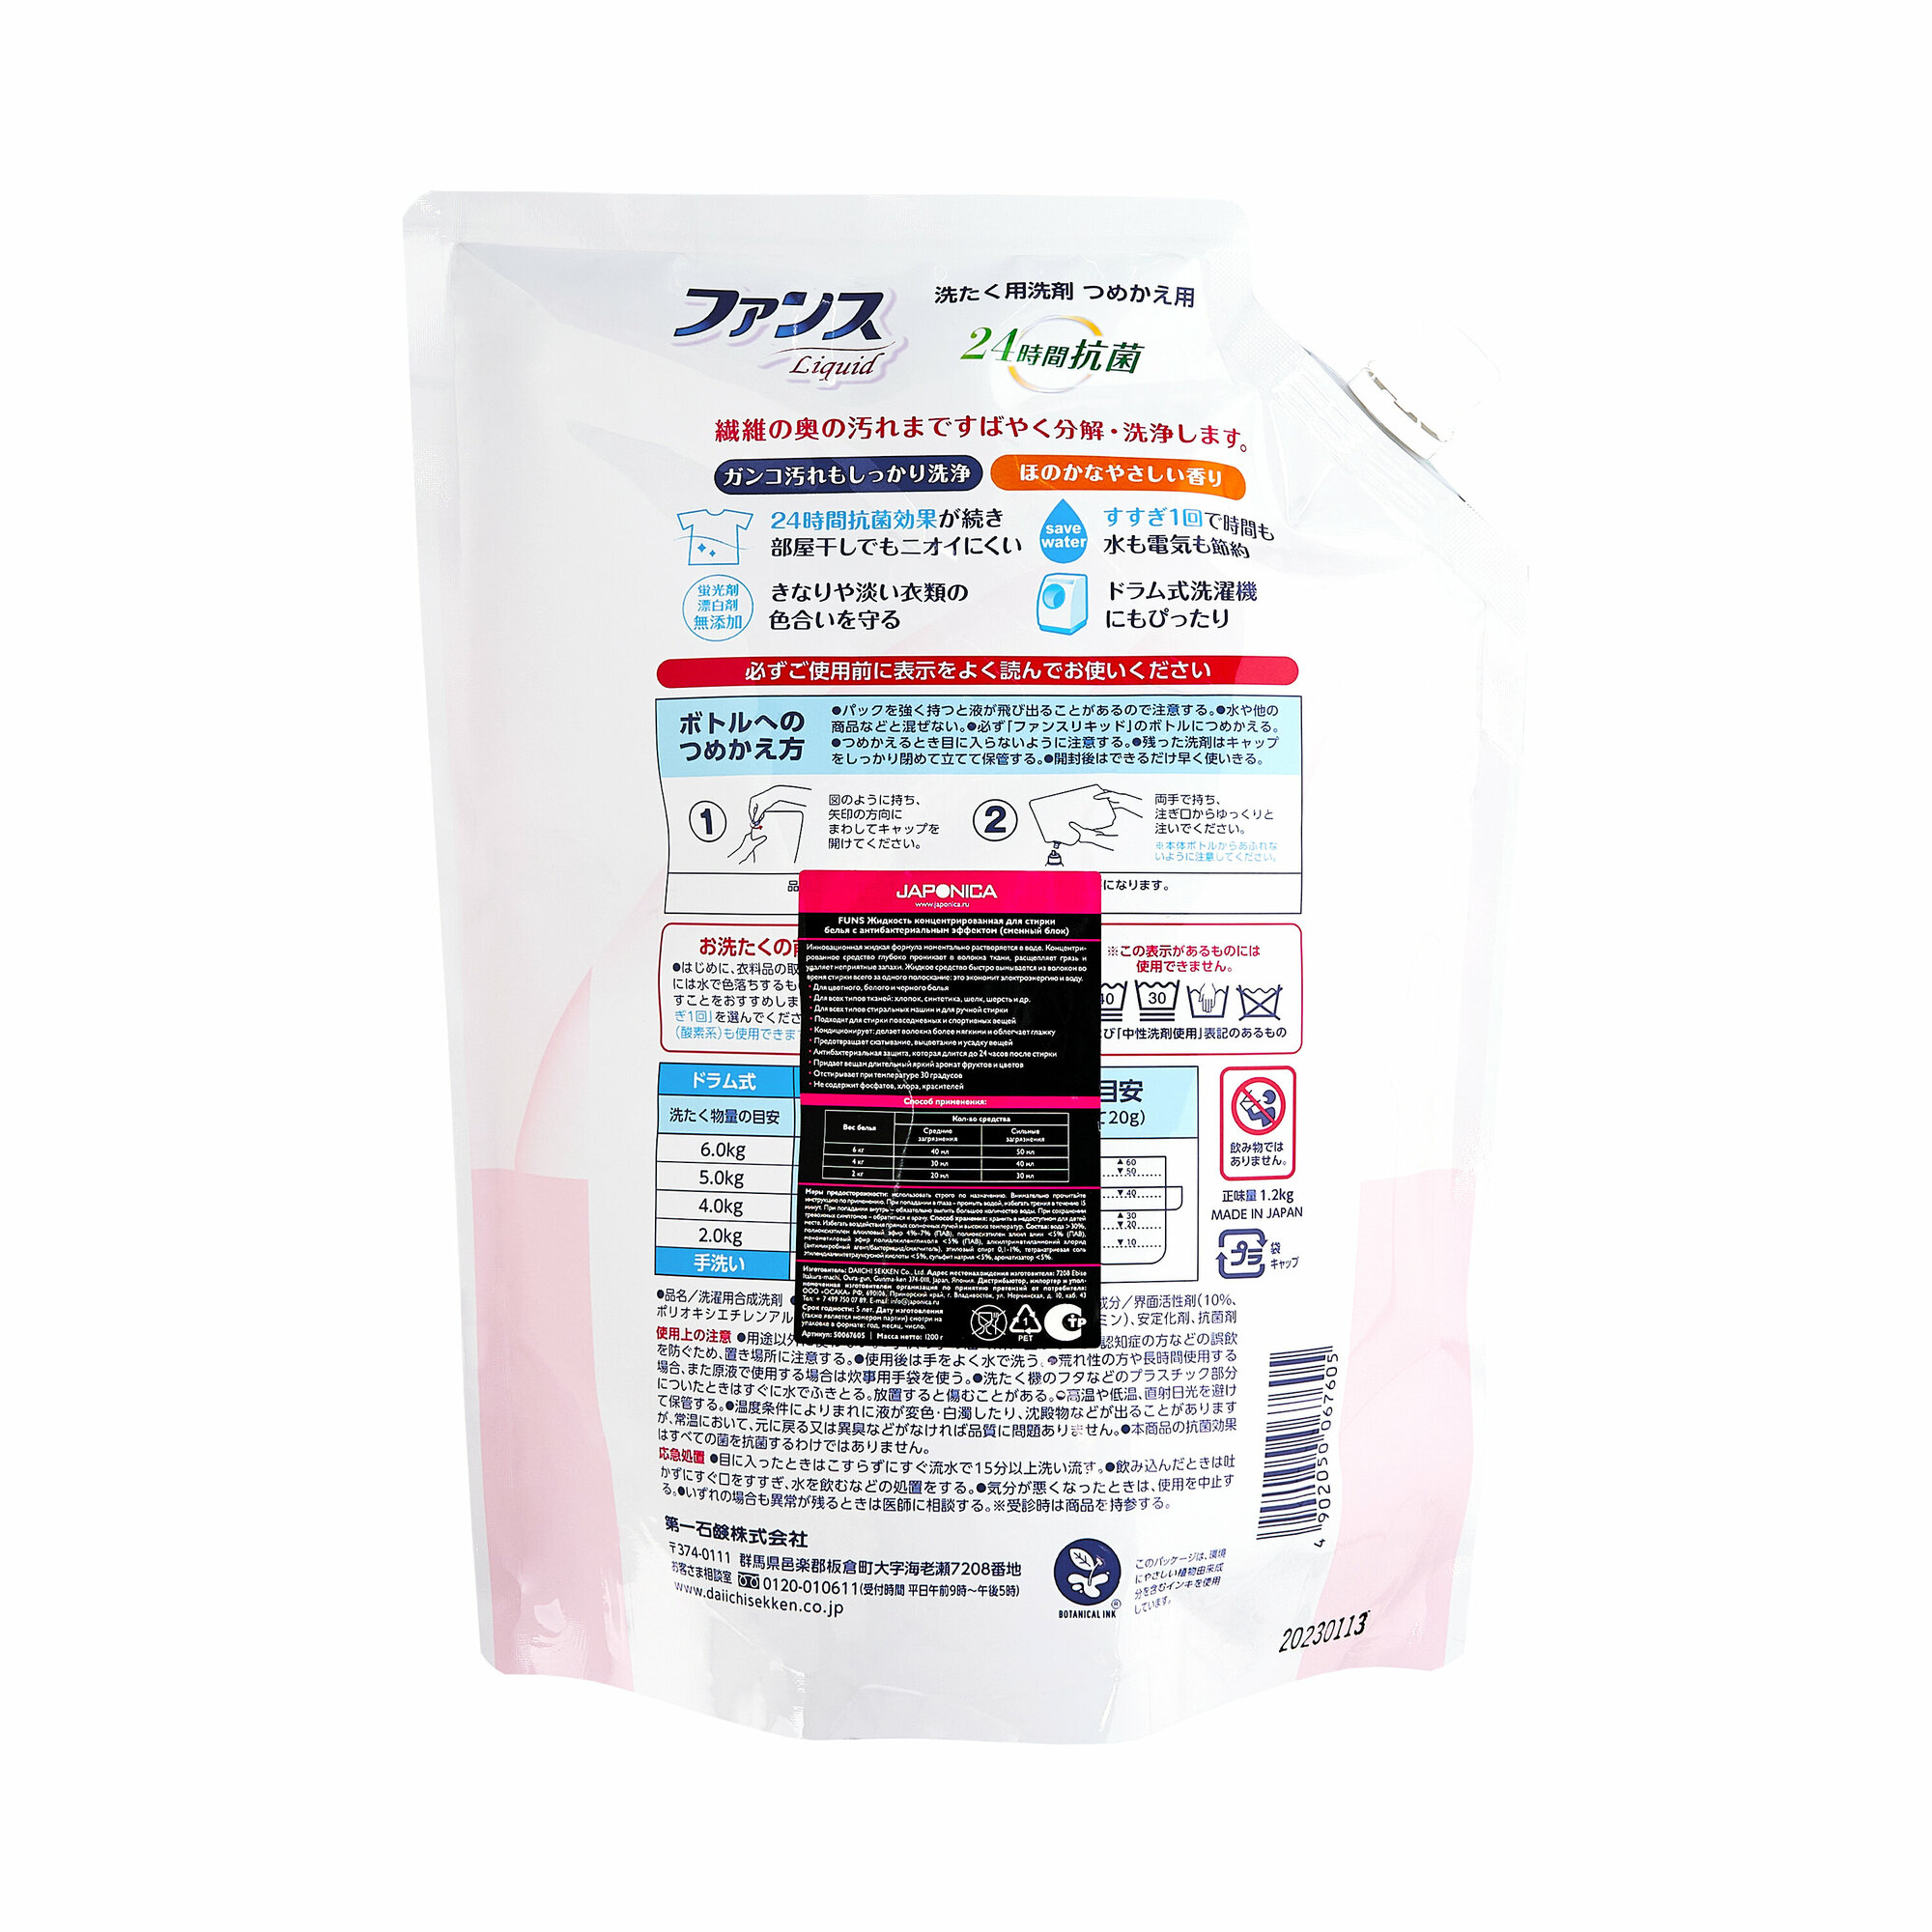 FUNS Жидкость концентрированная для стирки белья с антибактериальным эффектом (сменный блок) 1200 г